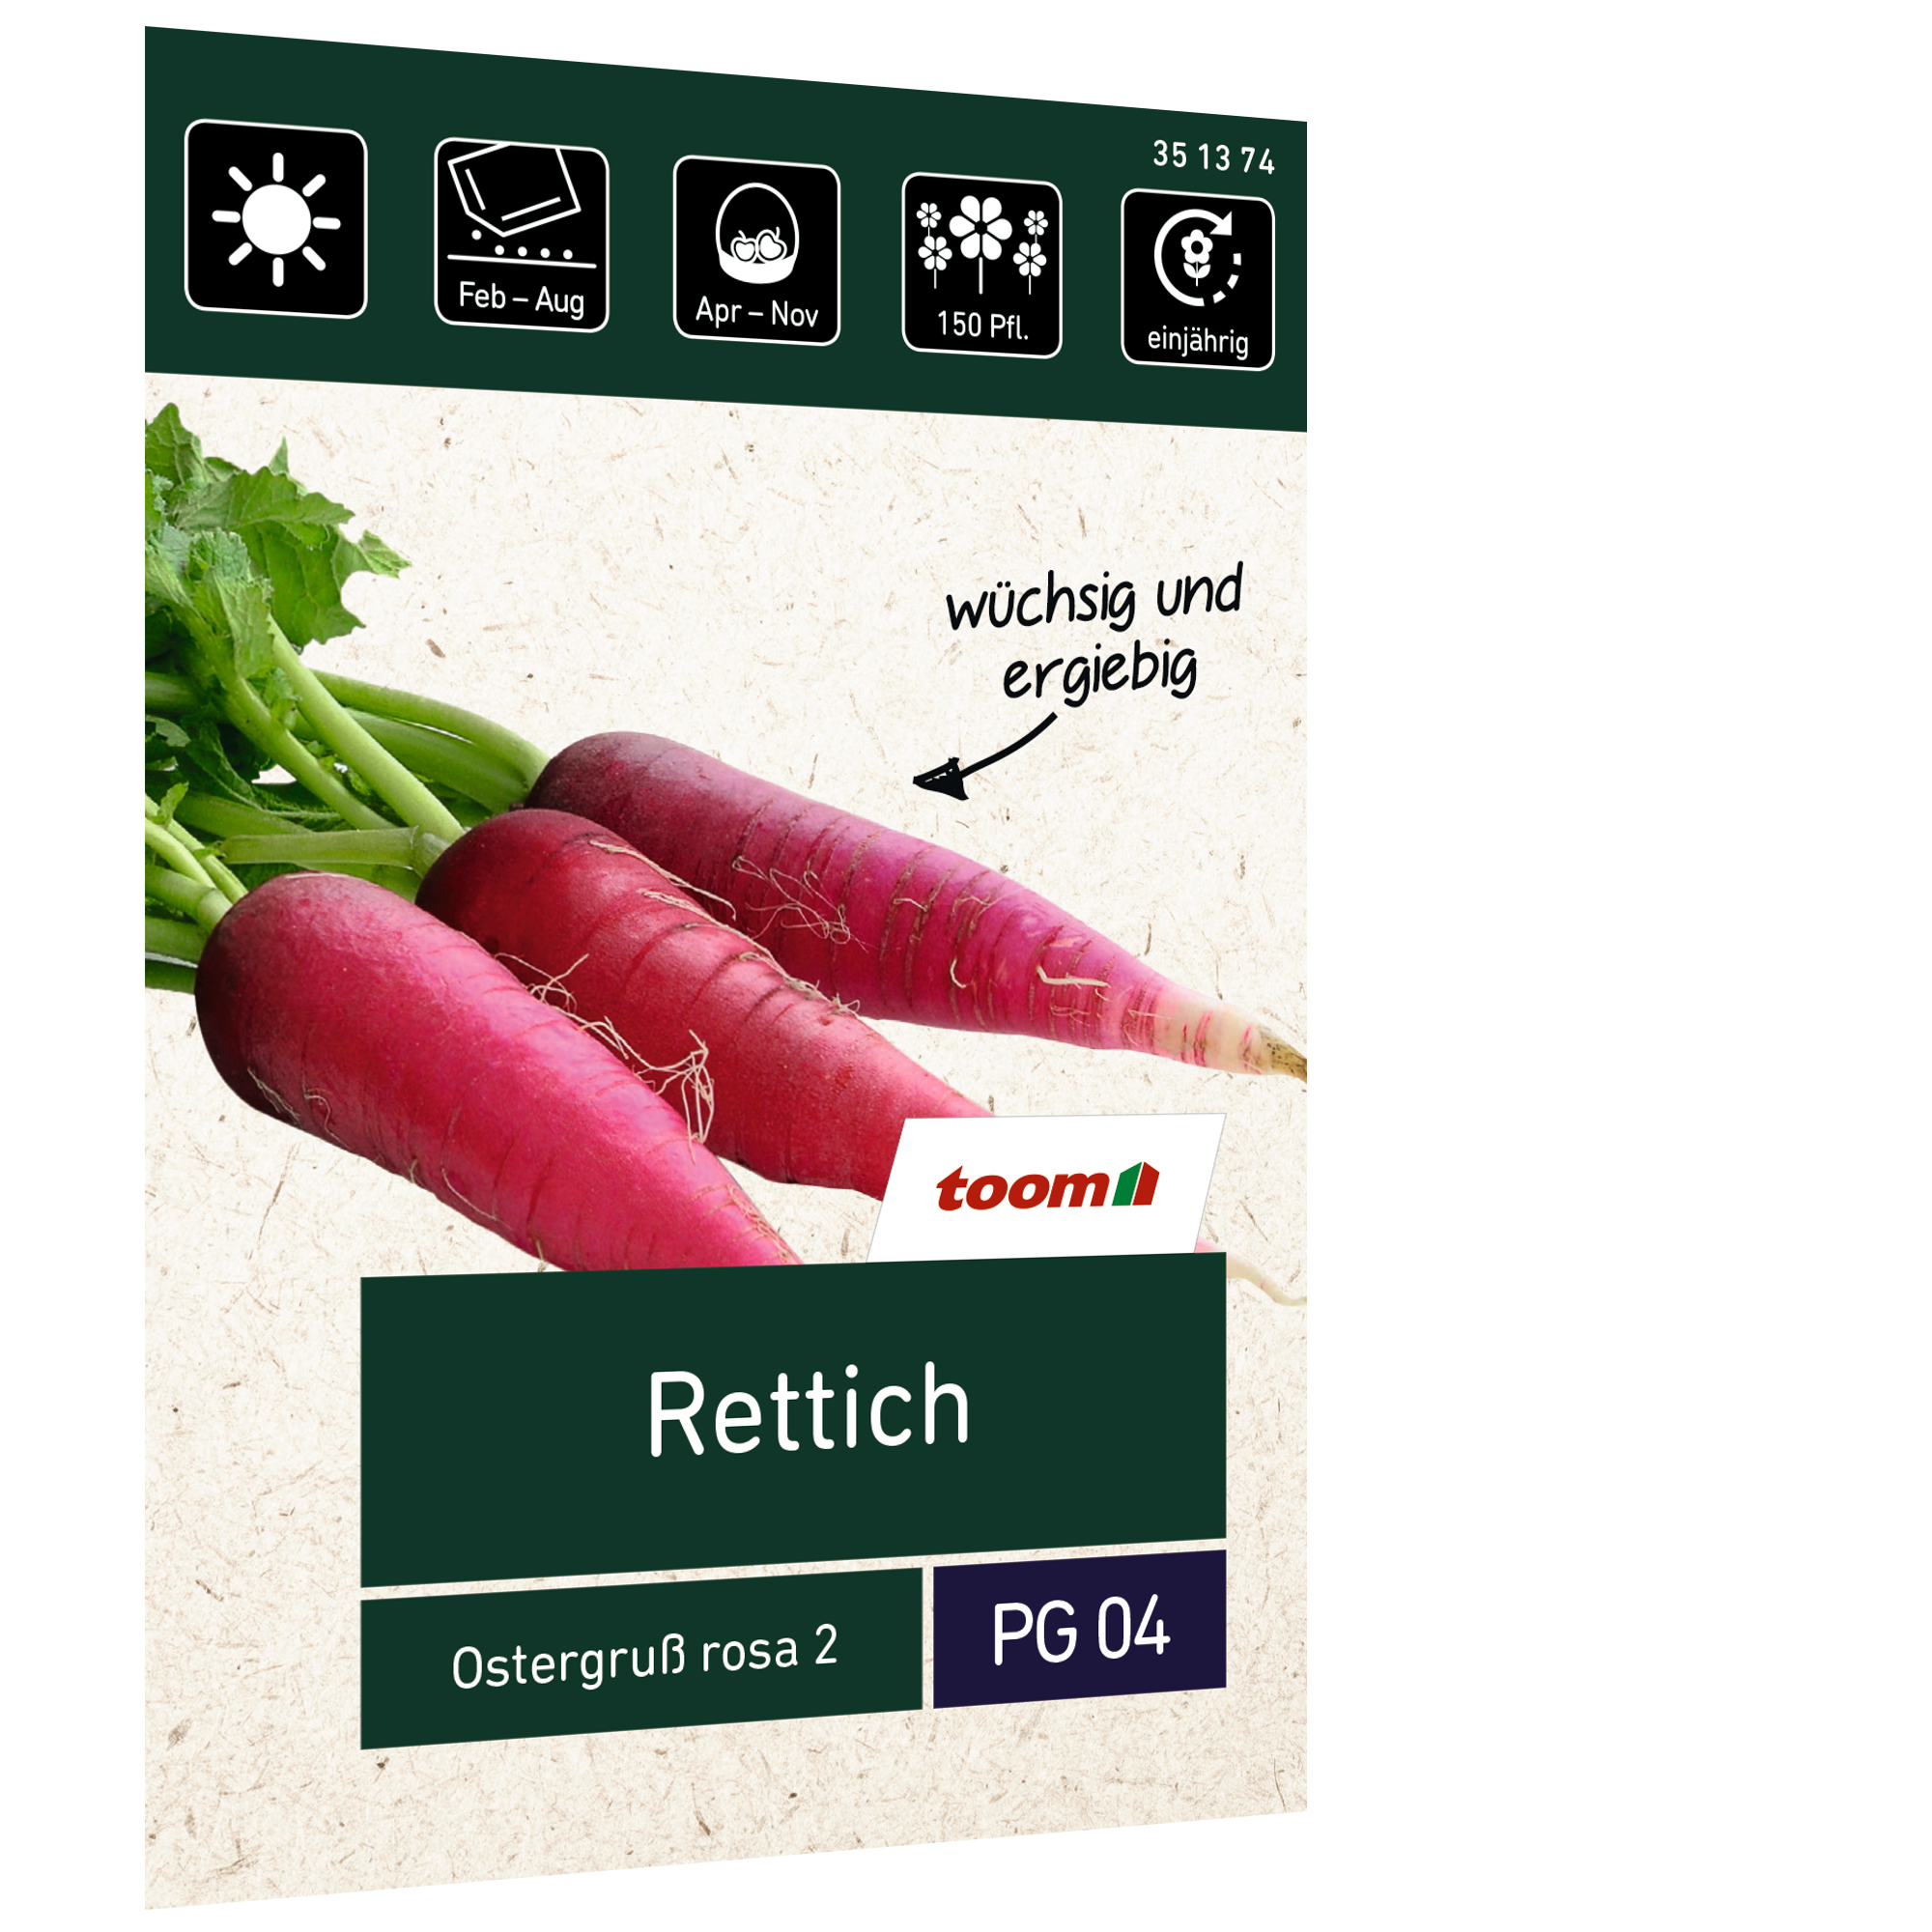 Rettich 'Ostergruß rosa 2' + product picture